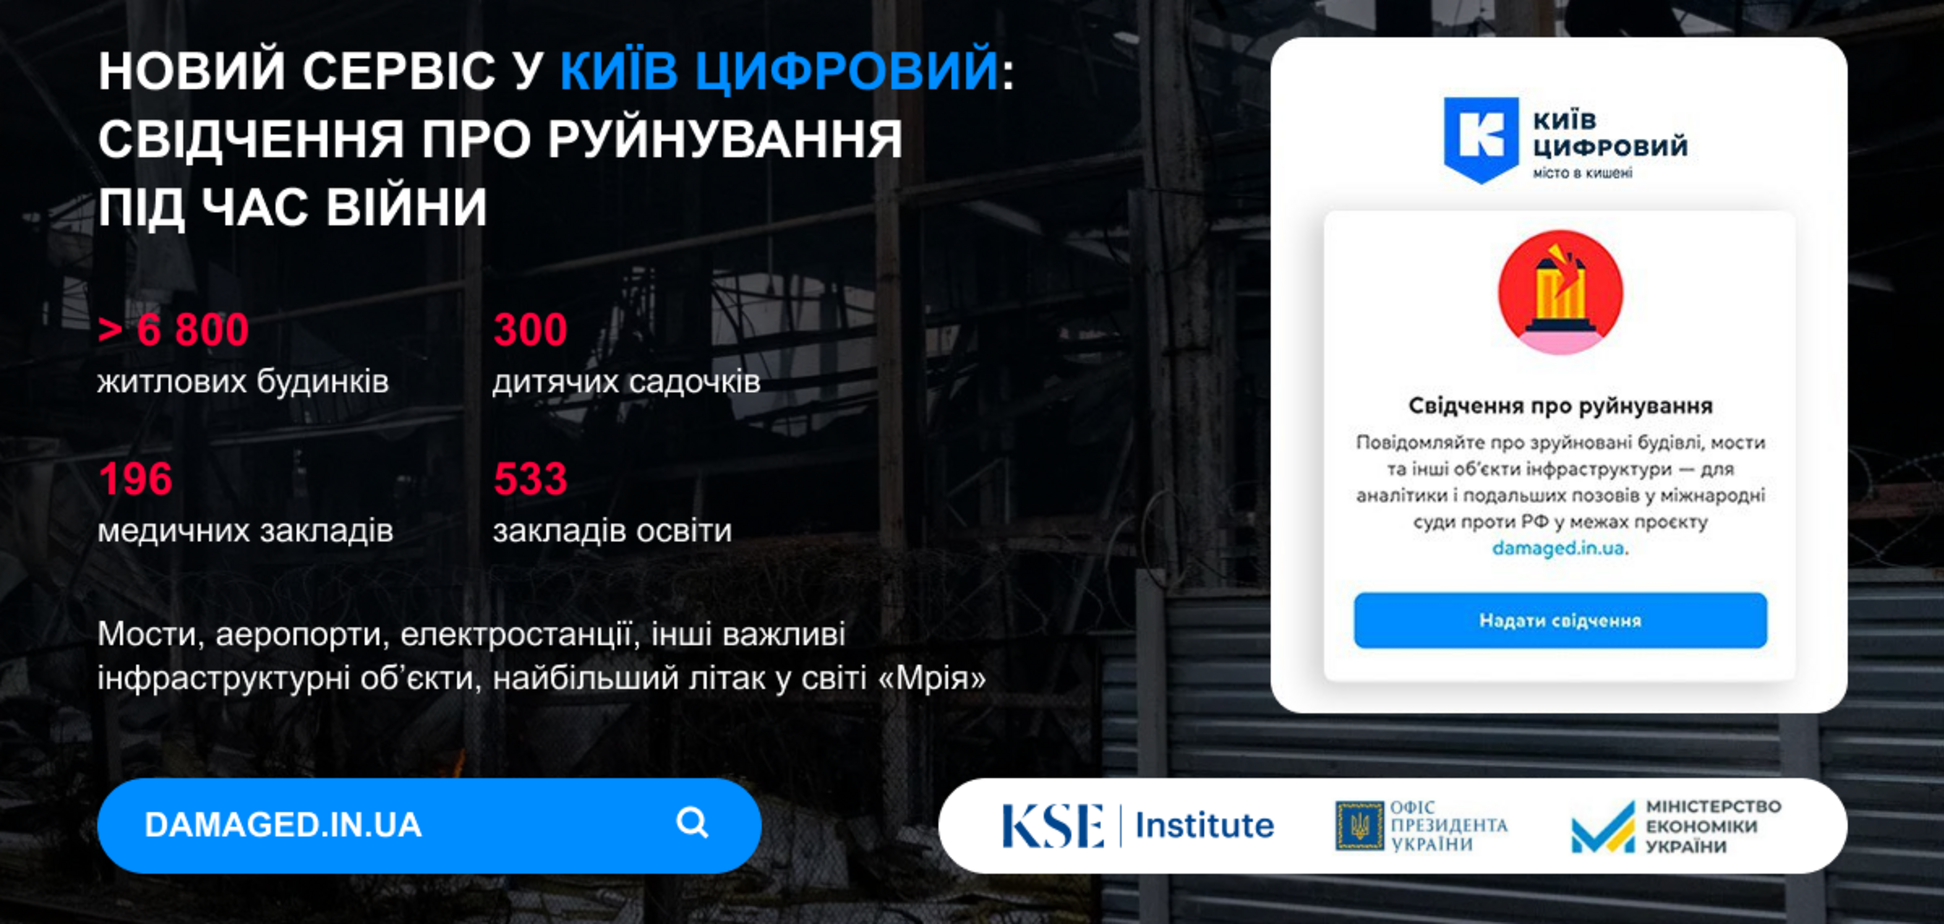 У Київ Цифровий з'явився новий сервіс: свідчення про руйнування під час війни